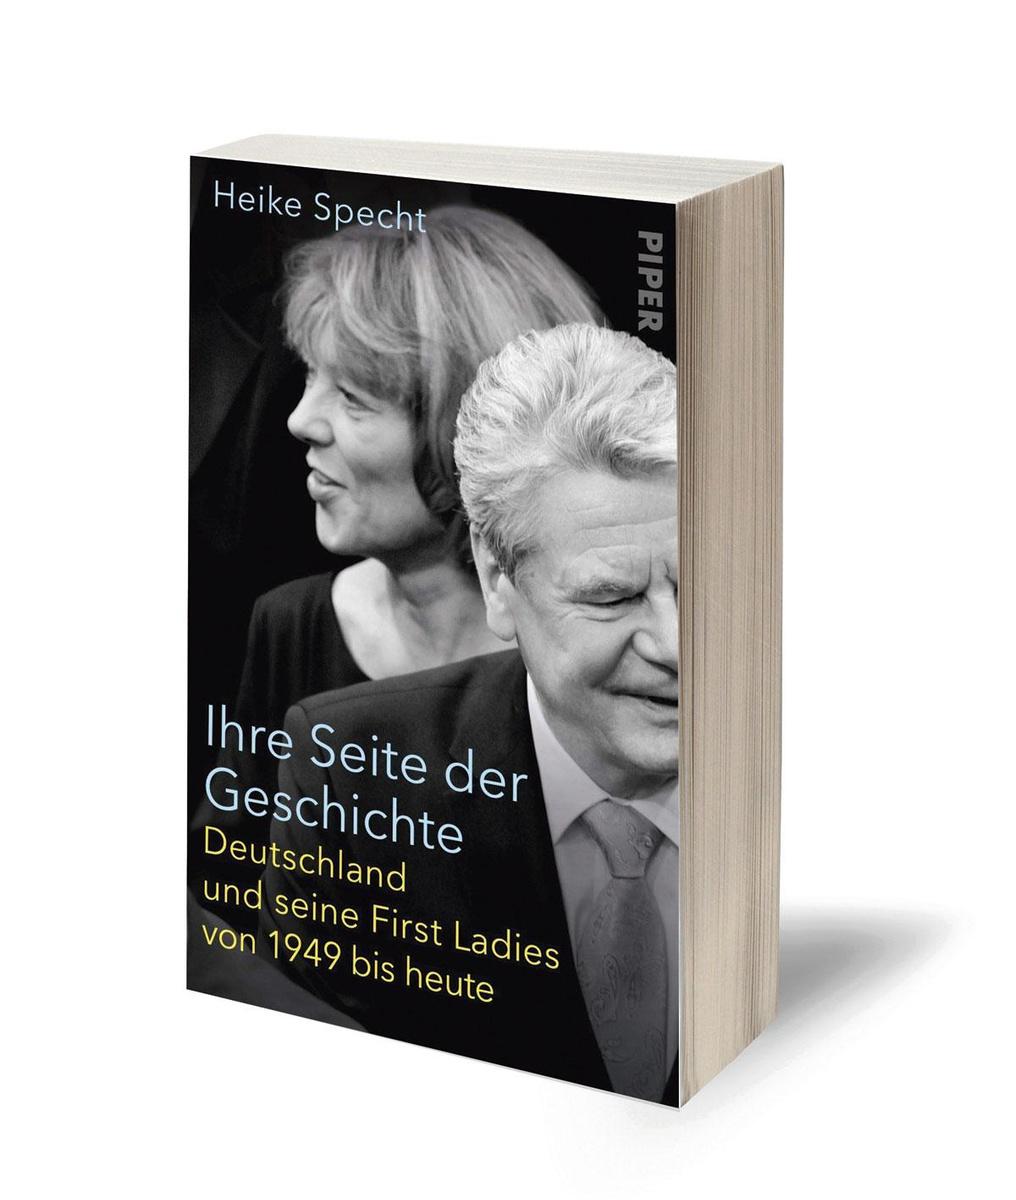 Heike Specht, Ihre Seite der Geschichte. Deutschland und seine First Ladies von 1949 bis heute, Piper, 400 blz., 24 euro